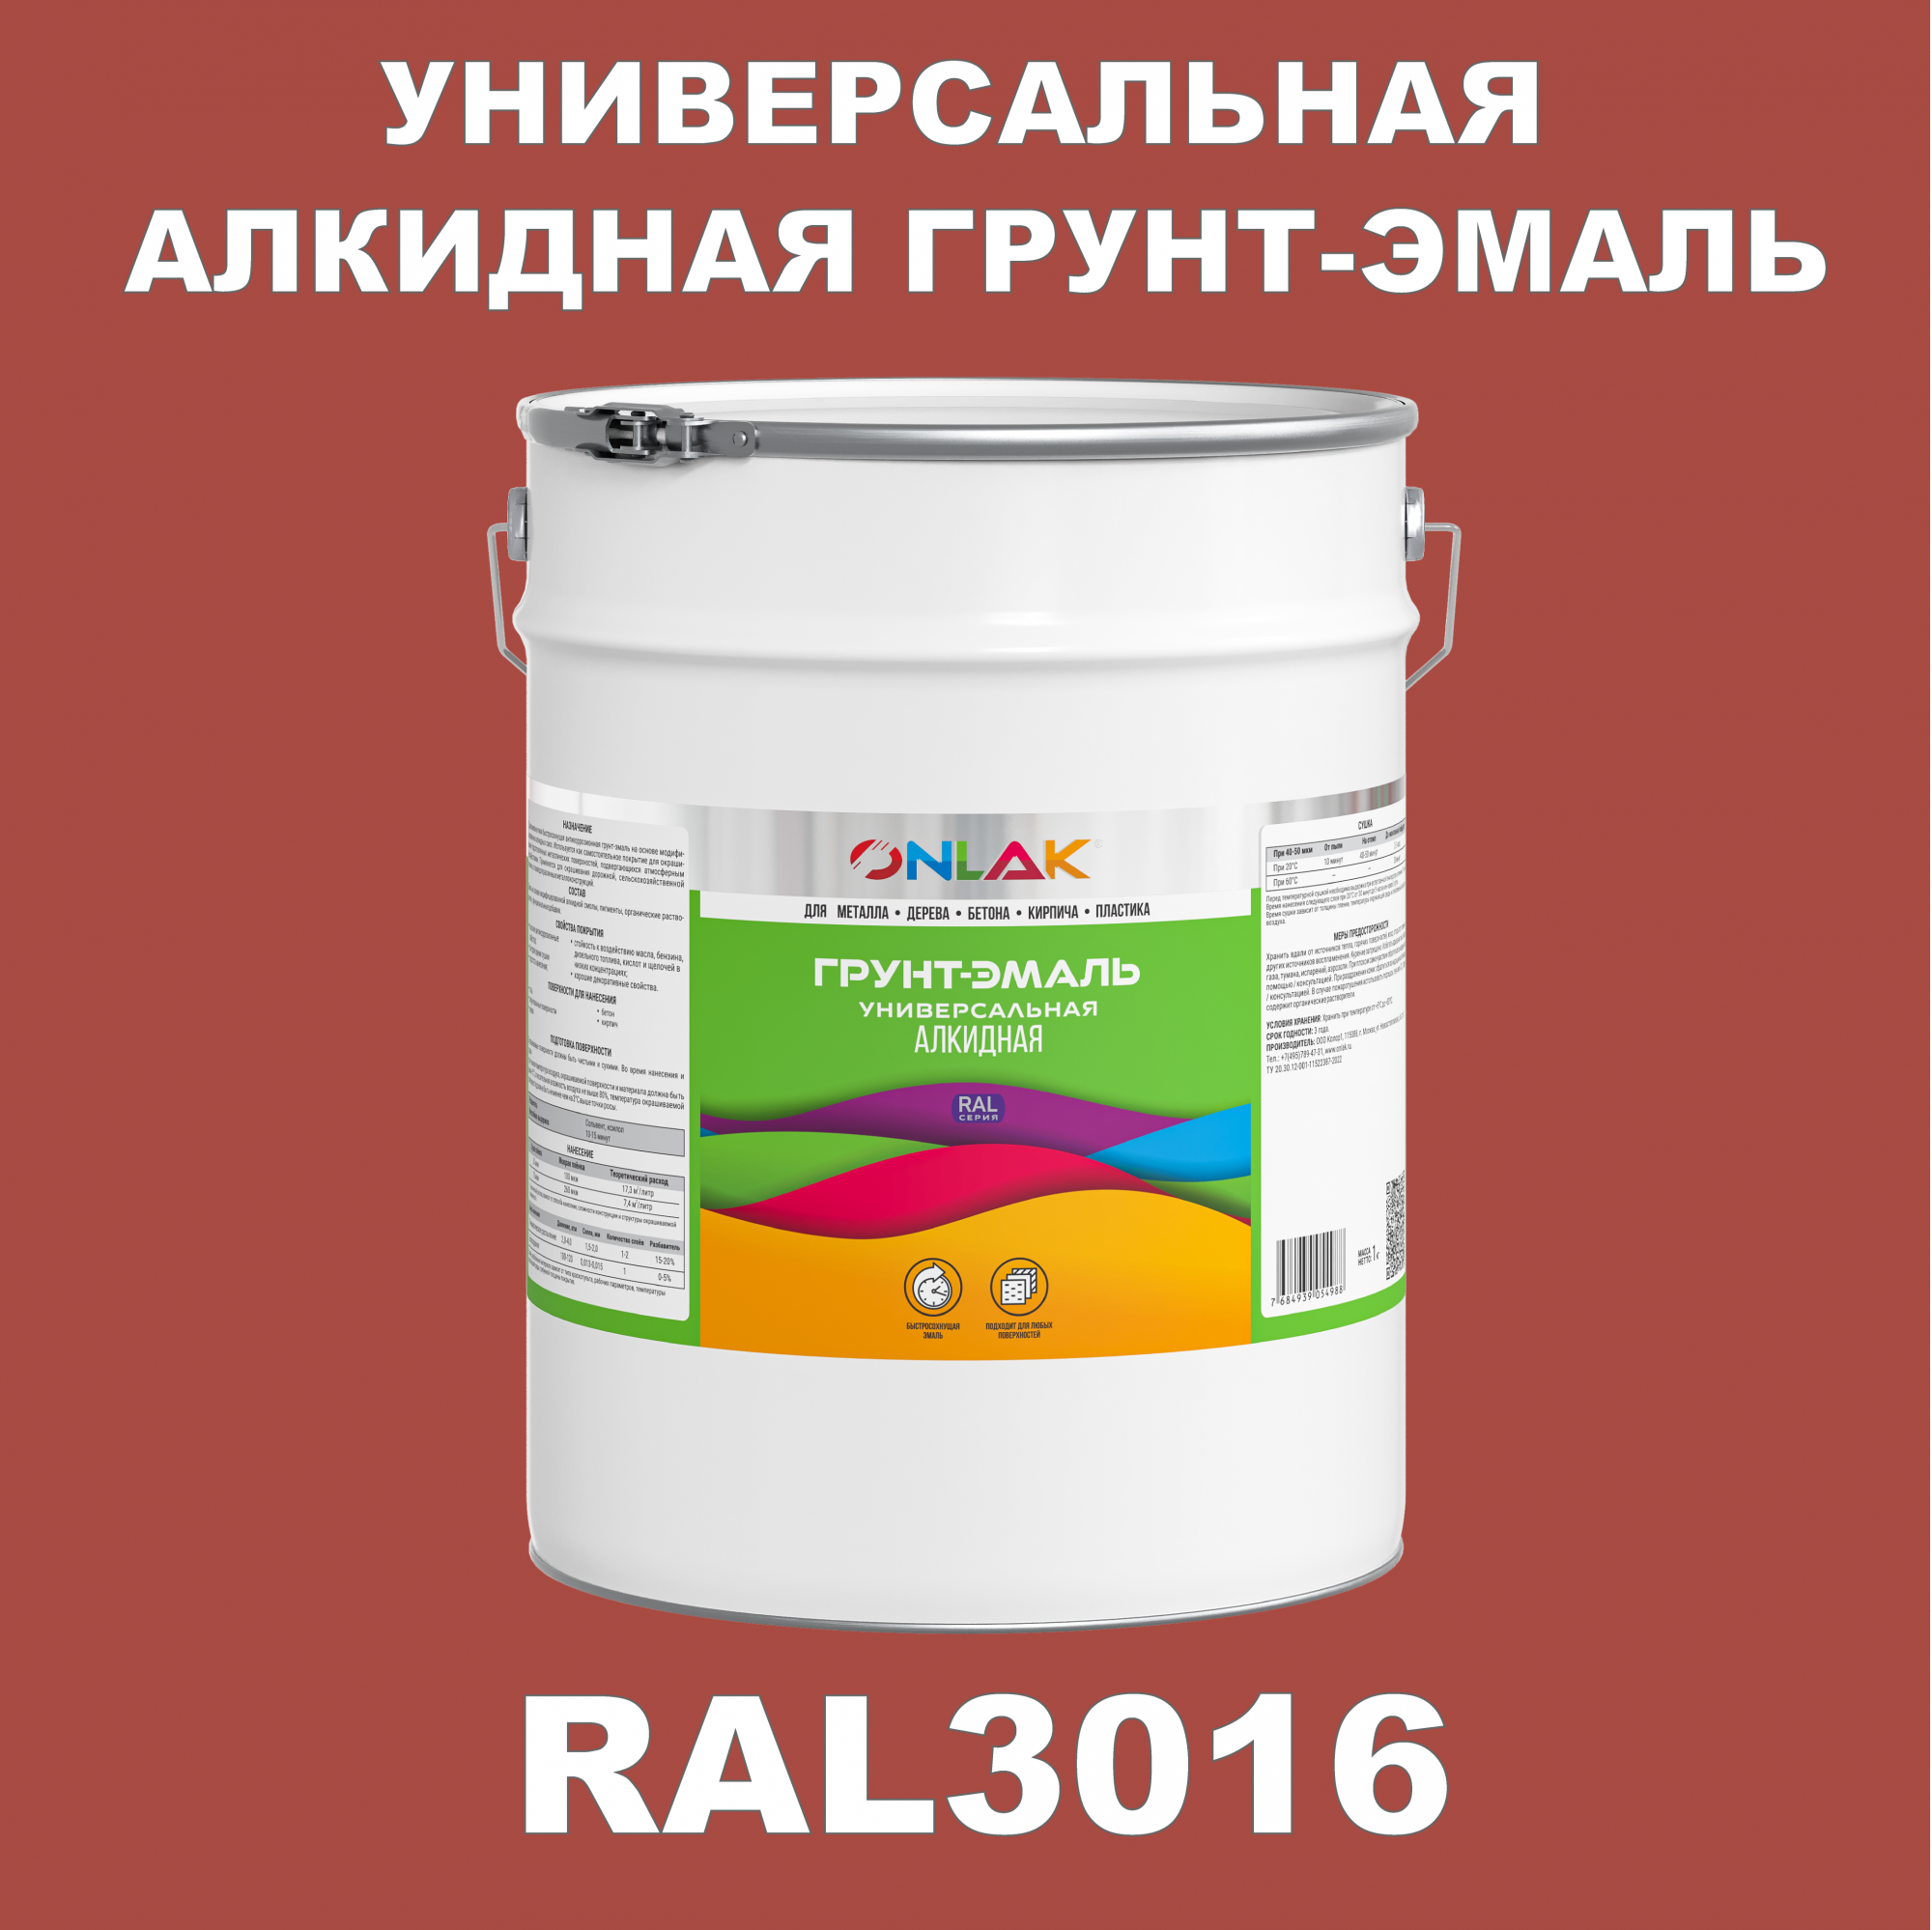 Грунт-эмаль ONLAK 1К RAL3016 антикоррозионная алкидная по металлу по ржавчине 20 кг грунт эмаль аэрозольная престиж 3в1 алкидная коричневая ral 8017 425 мл 0 425 кг